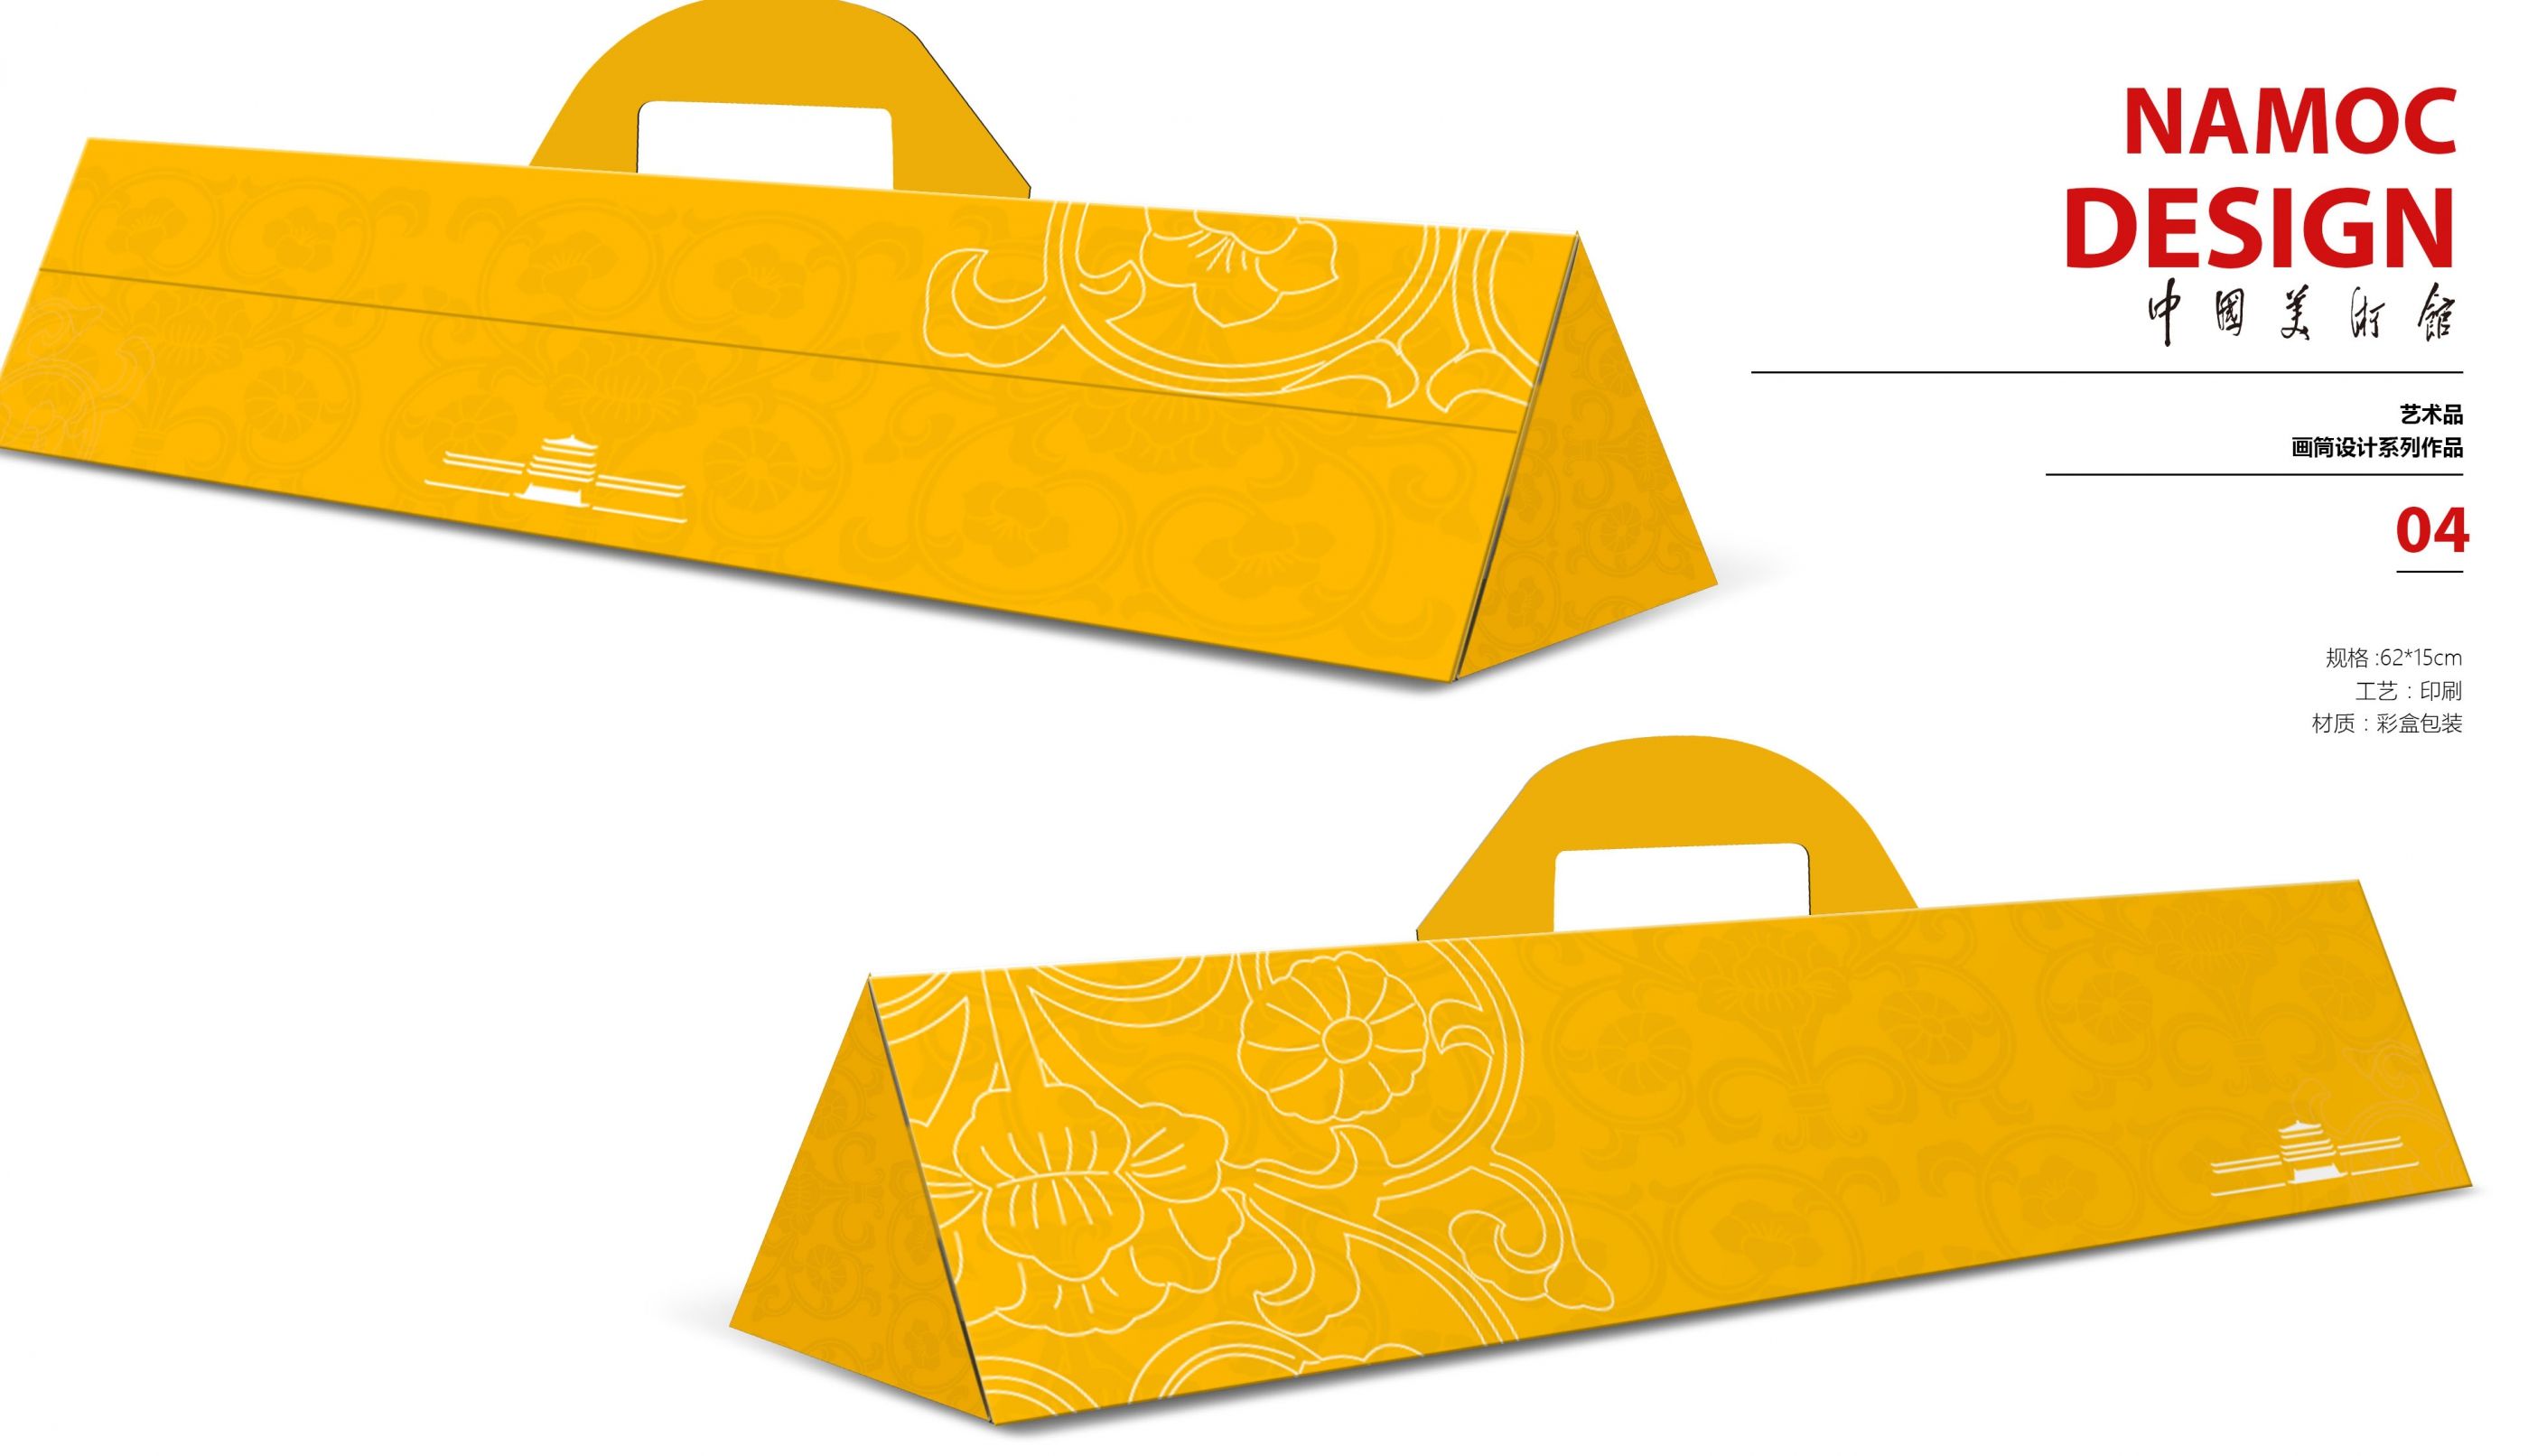 三角形画卷包装盒设计 飞特网会员原创产品包装设计